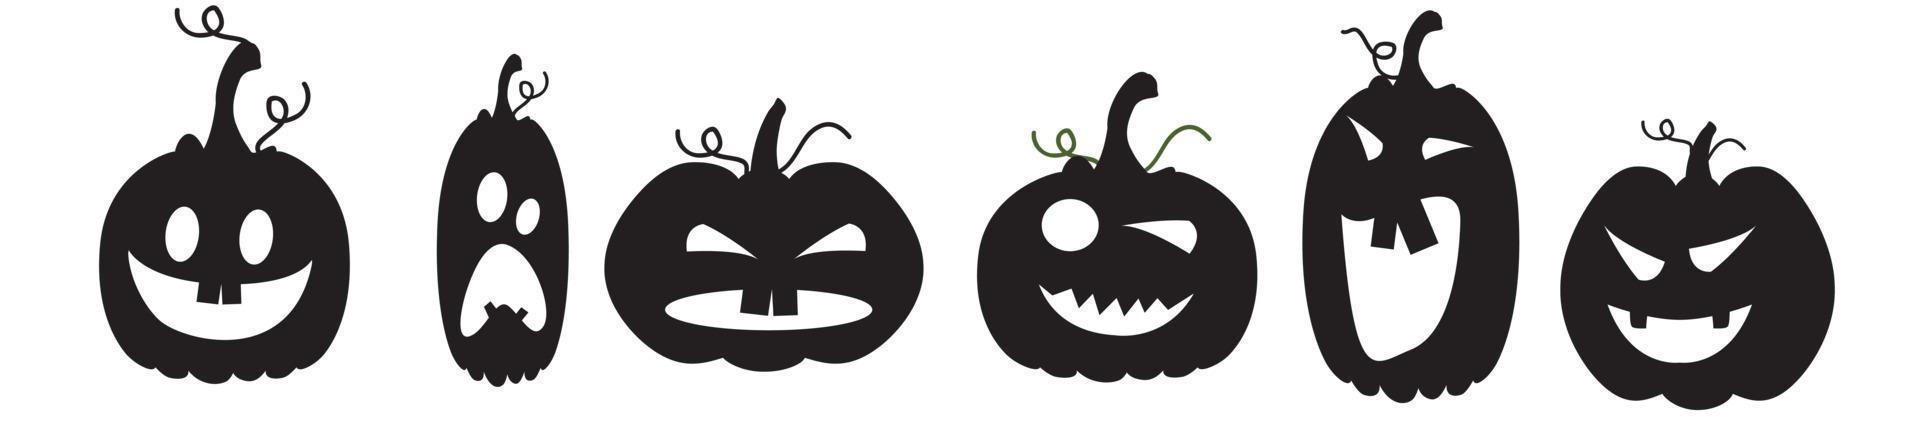 siluetas negras de calabazas para halloween. iconos de emociones vector